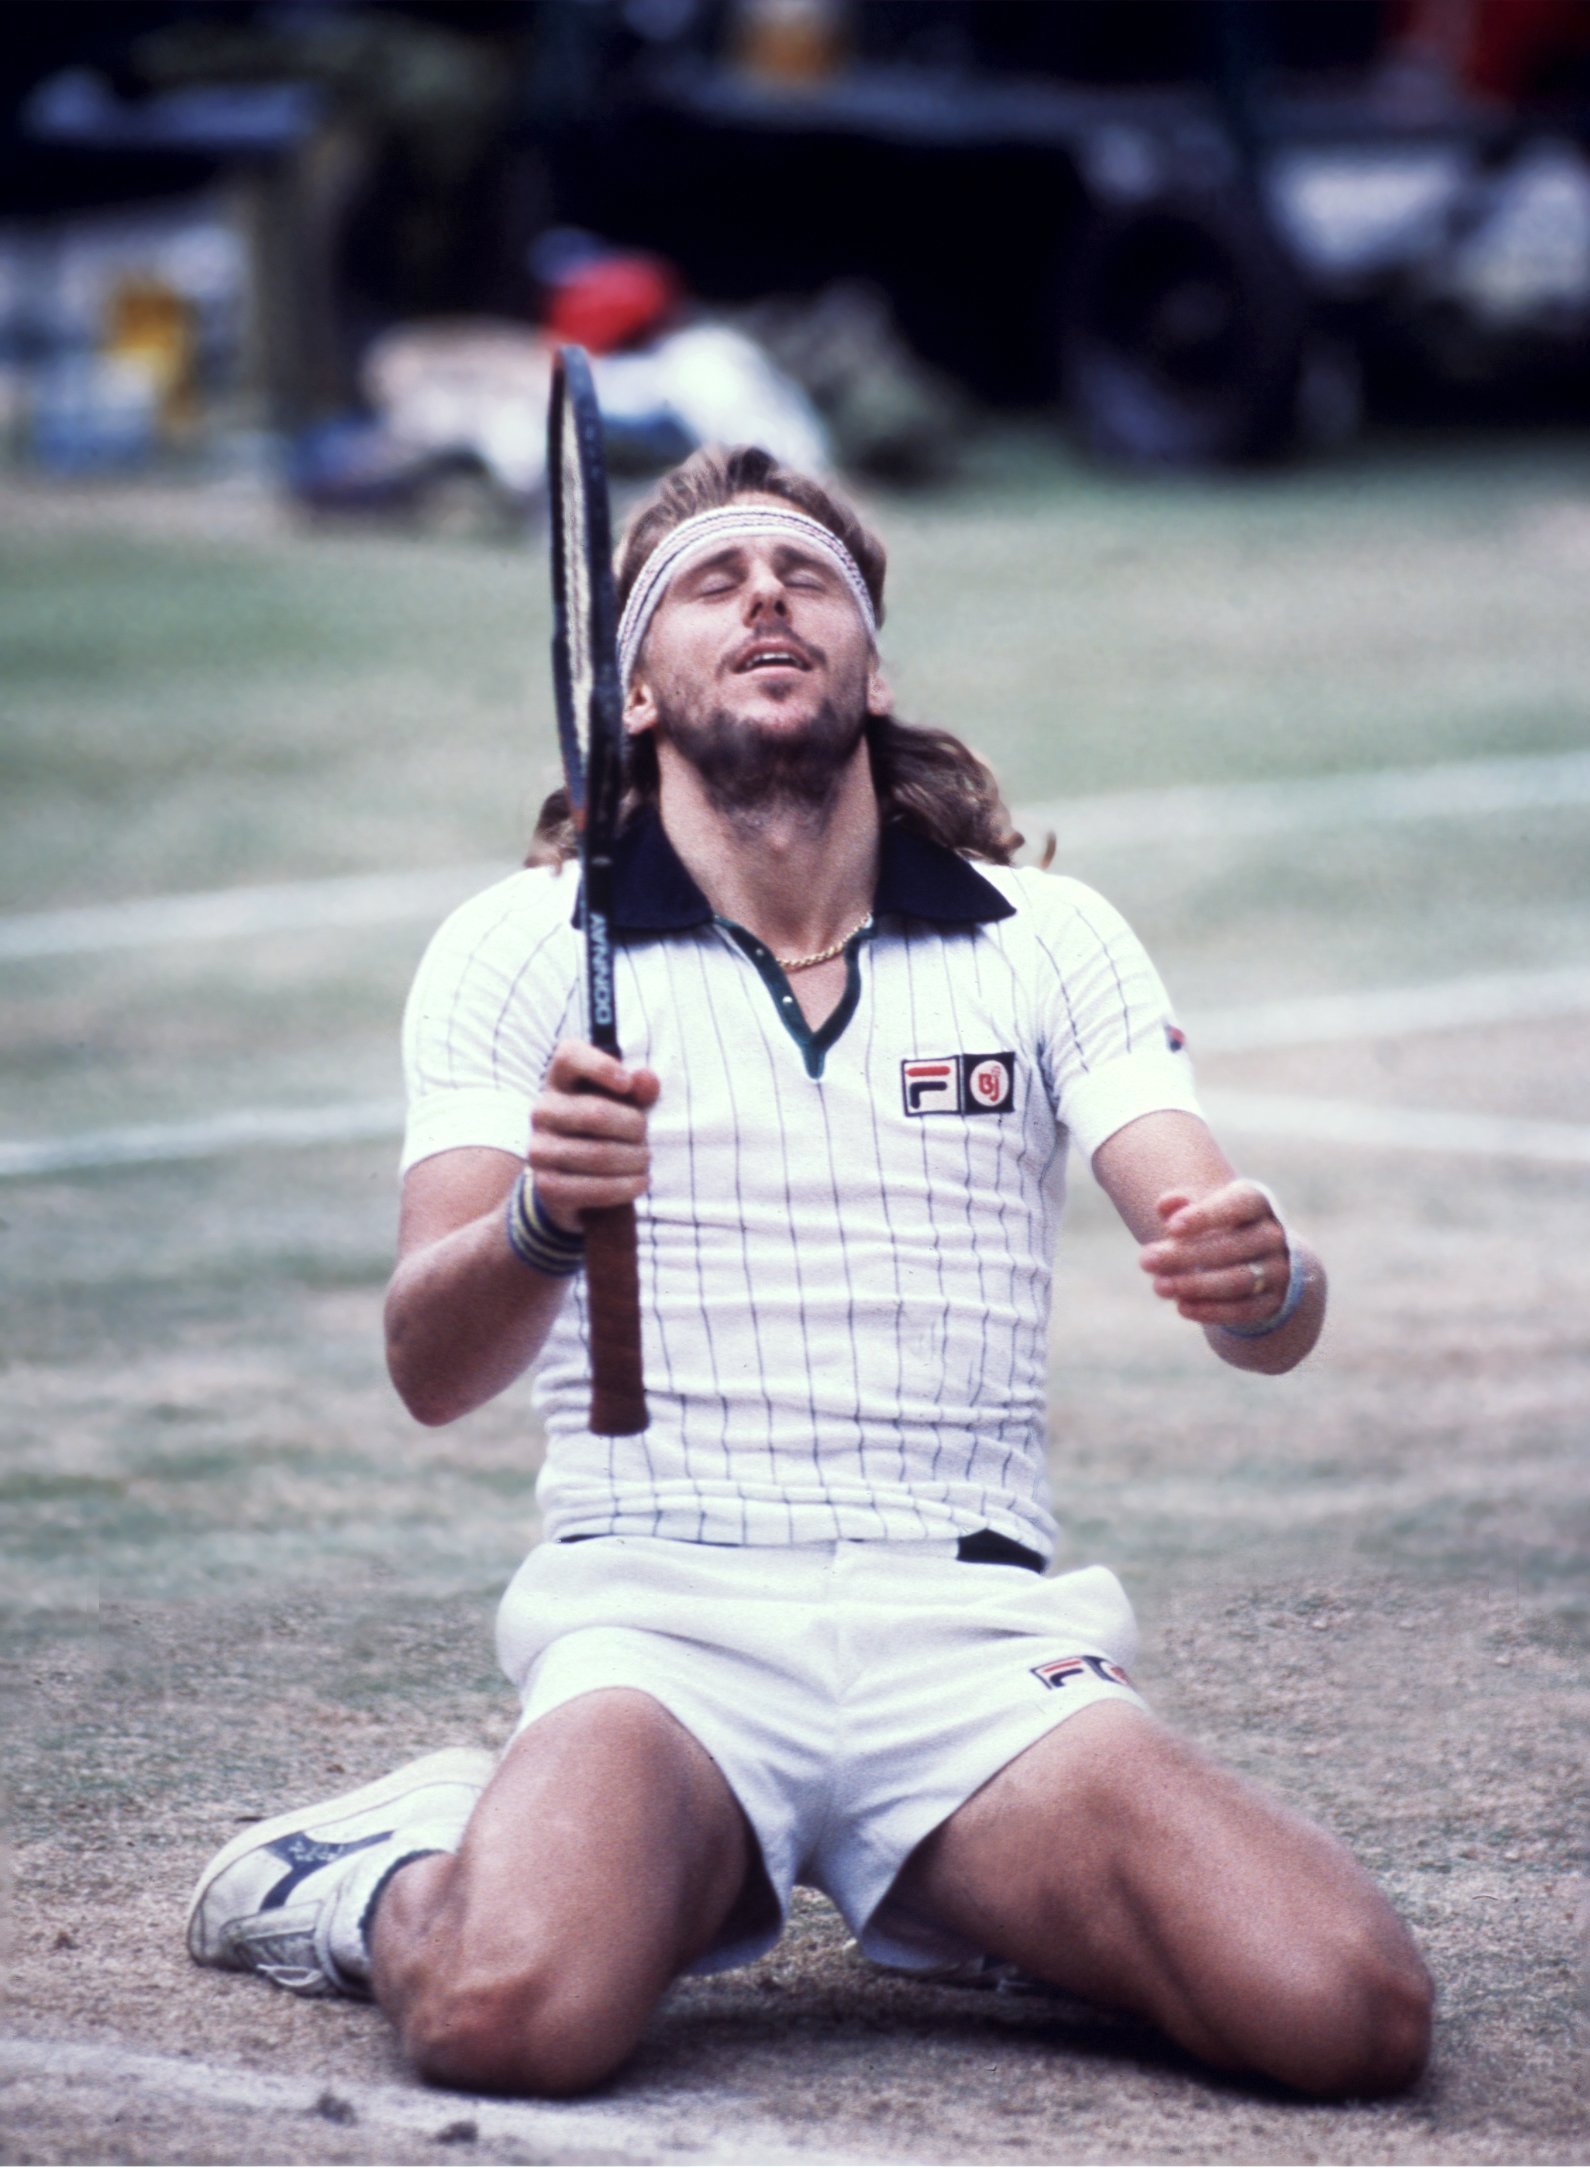 ©SCANPIX SWEDEN, 1980. Björn Borg vinner Wimbledon för femte gången. Här i segerposition på knä med slutna ögon. Foto: SCANPIX Code: 20360 *** ENGCAP: Björn Borg win Wimbledon for the fifth time.